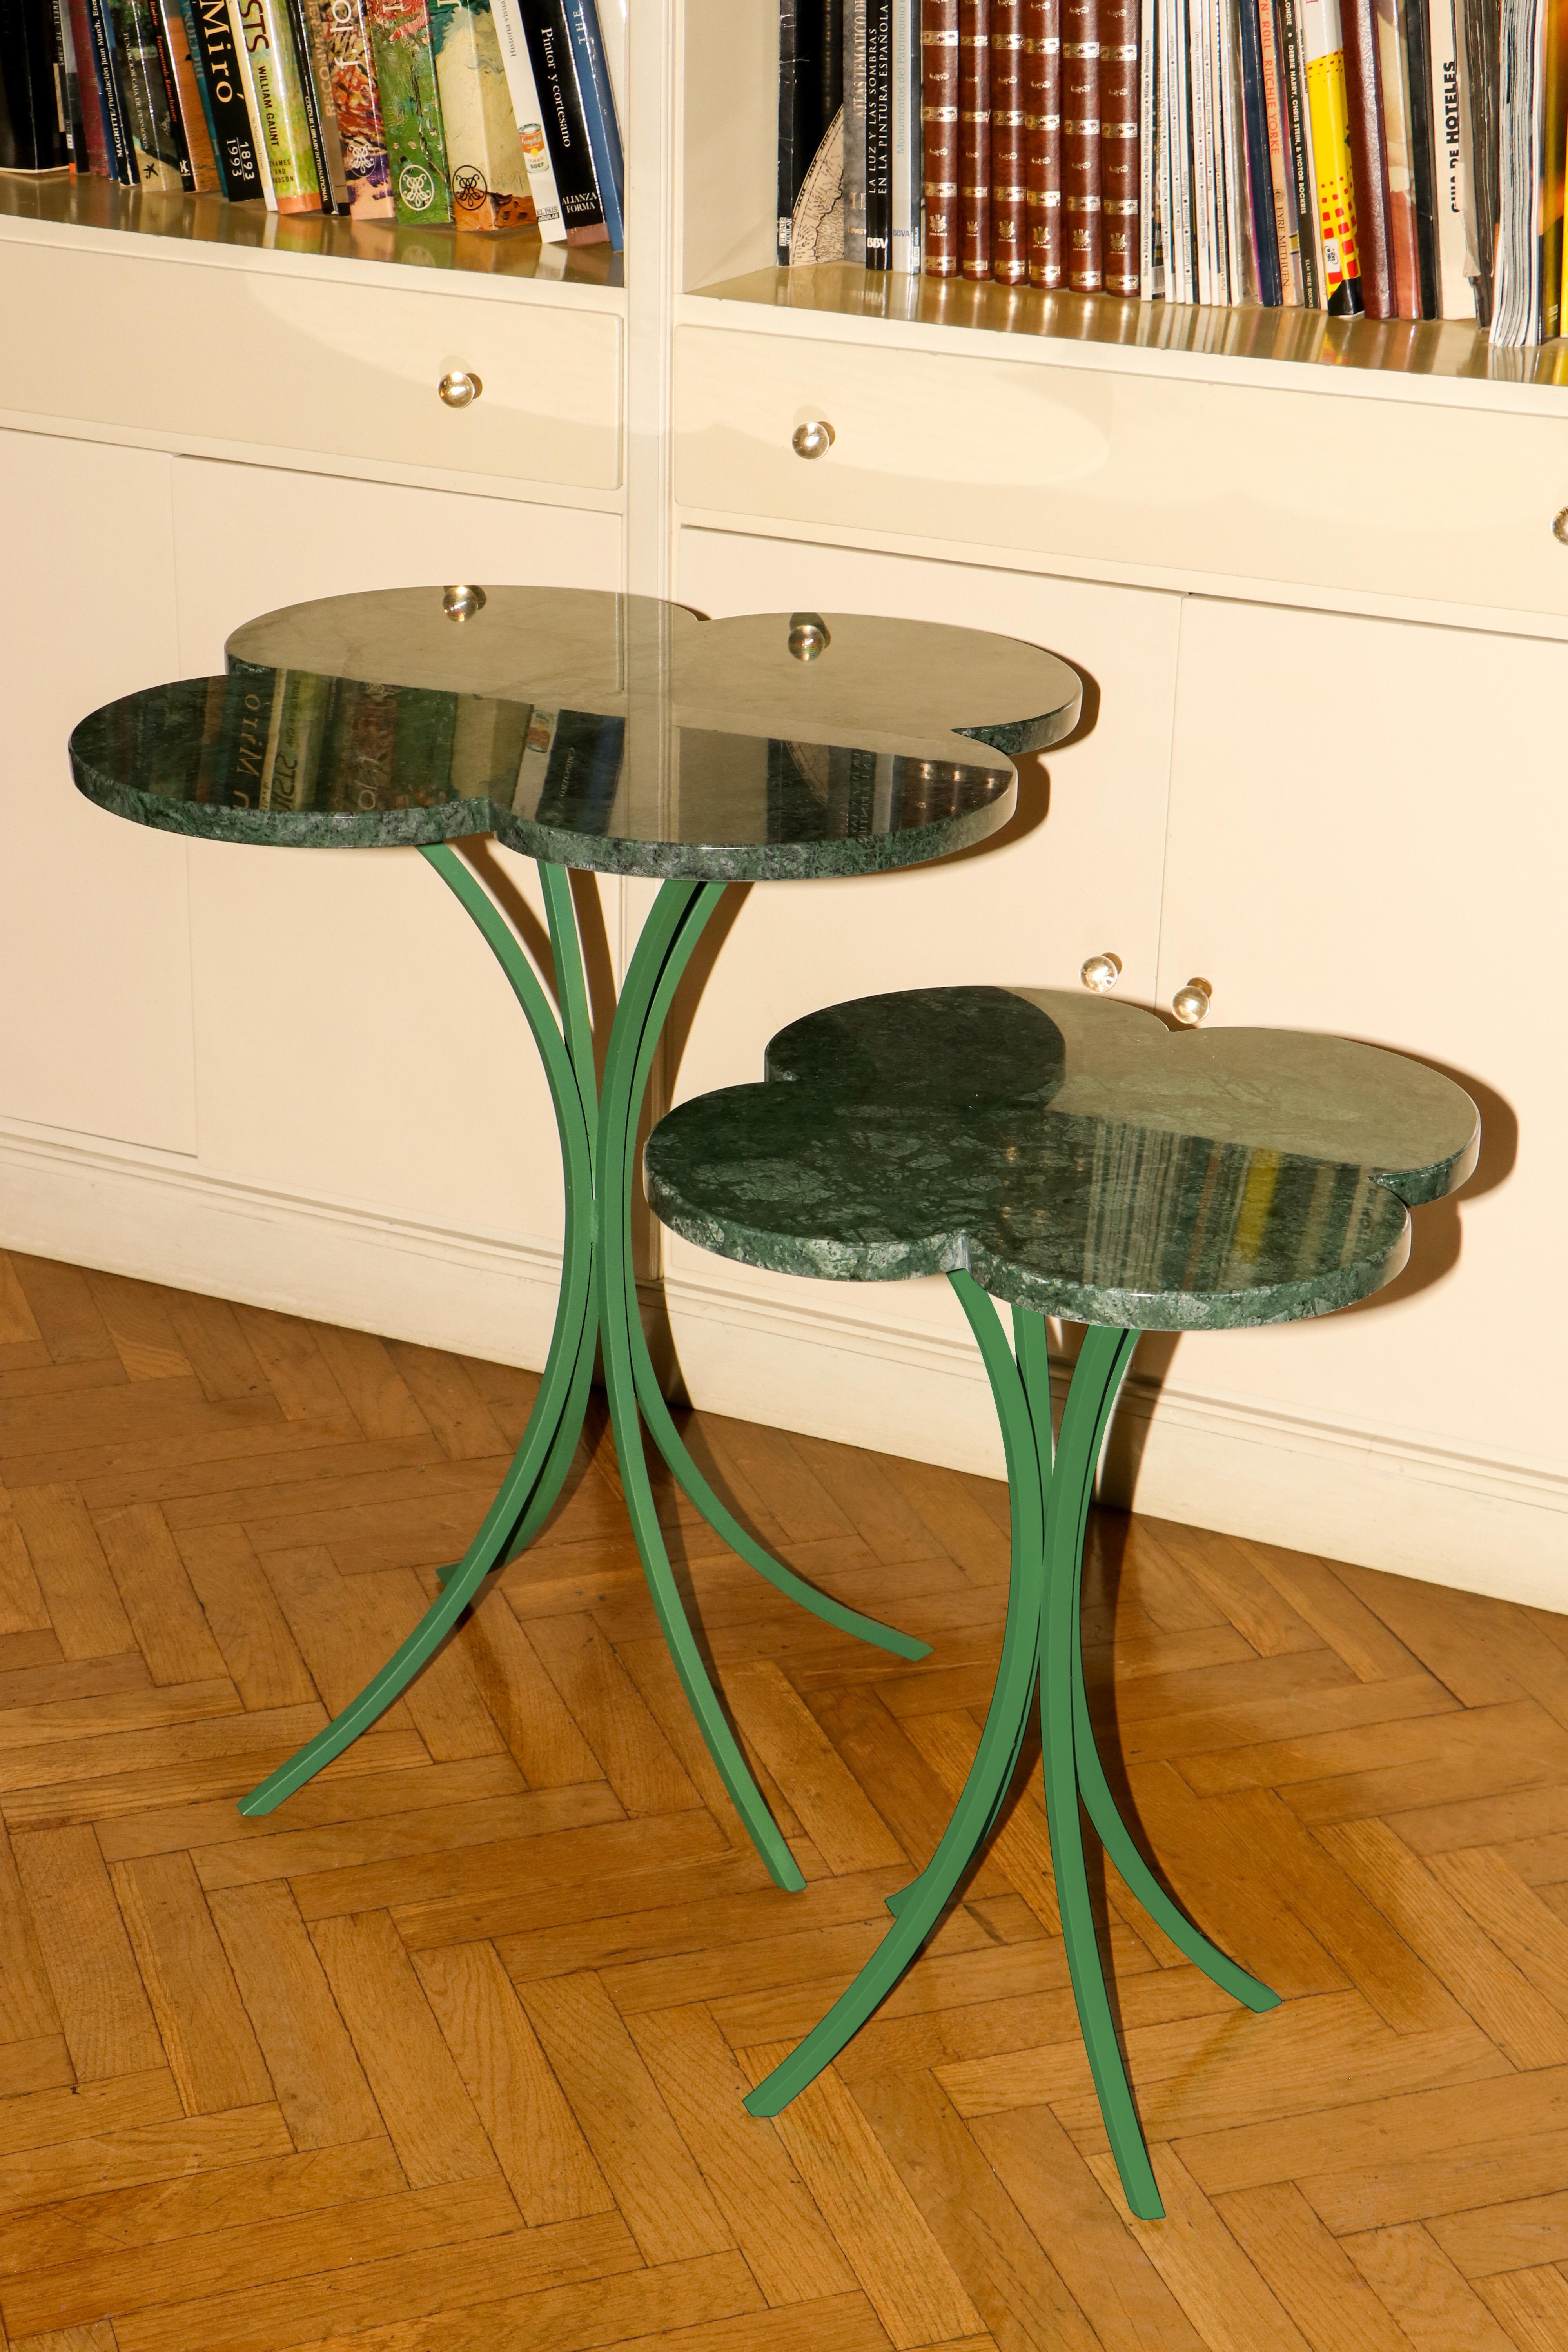 Clover est une table d'appoint composée d'un plateau en marbre vert lisse et poli et de pieds en fer forgé de couleur vert forêt. Ses courbes recréent la fleur de trèfle dans un style élégant et épuré.

Deux tailles disponibles. Elle peut être